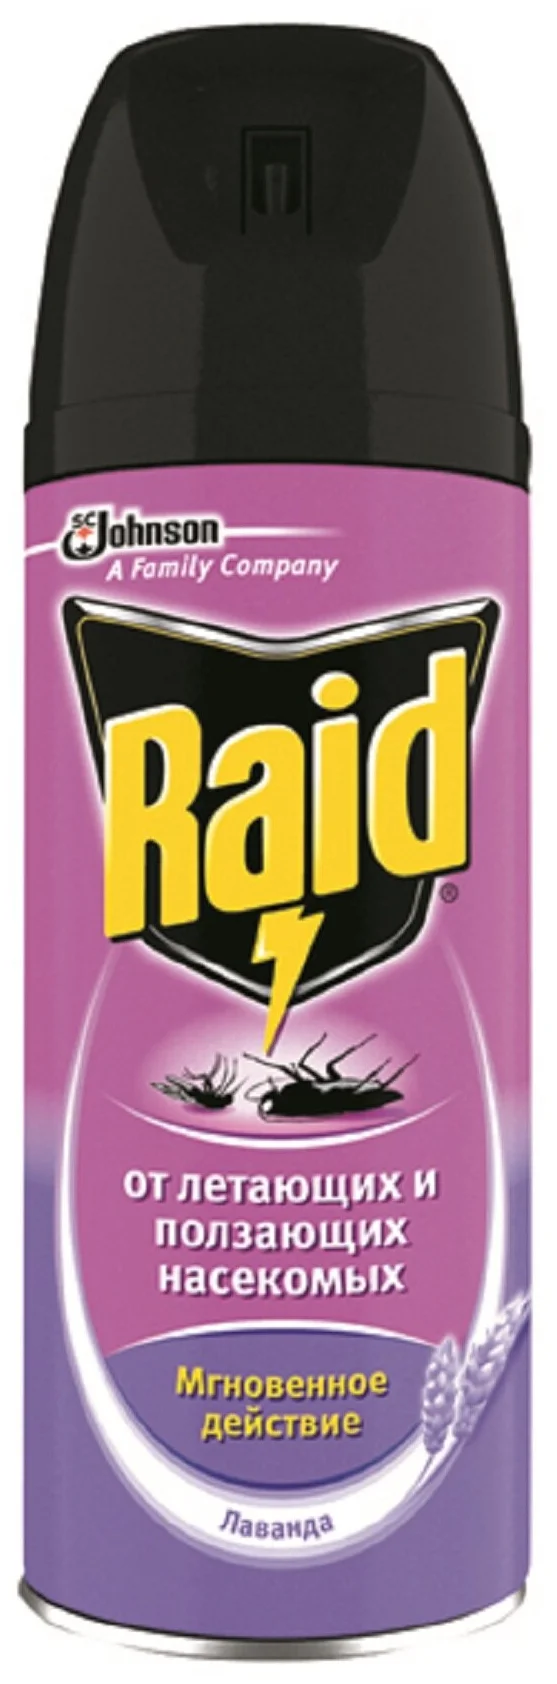 Raid - вид насекомых: моль, комары, муравьи, осы и шершни, тараканы, мухи, слепни, москиты